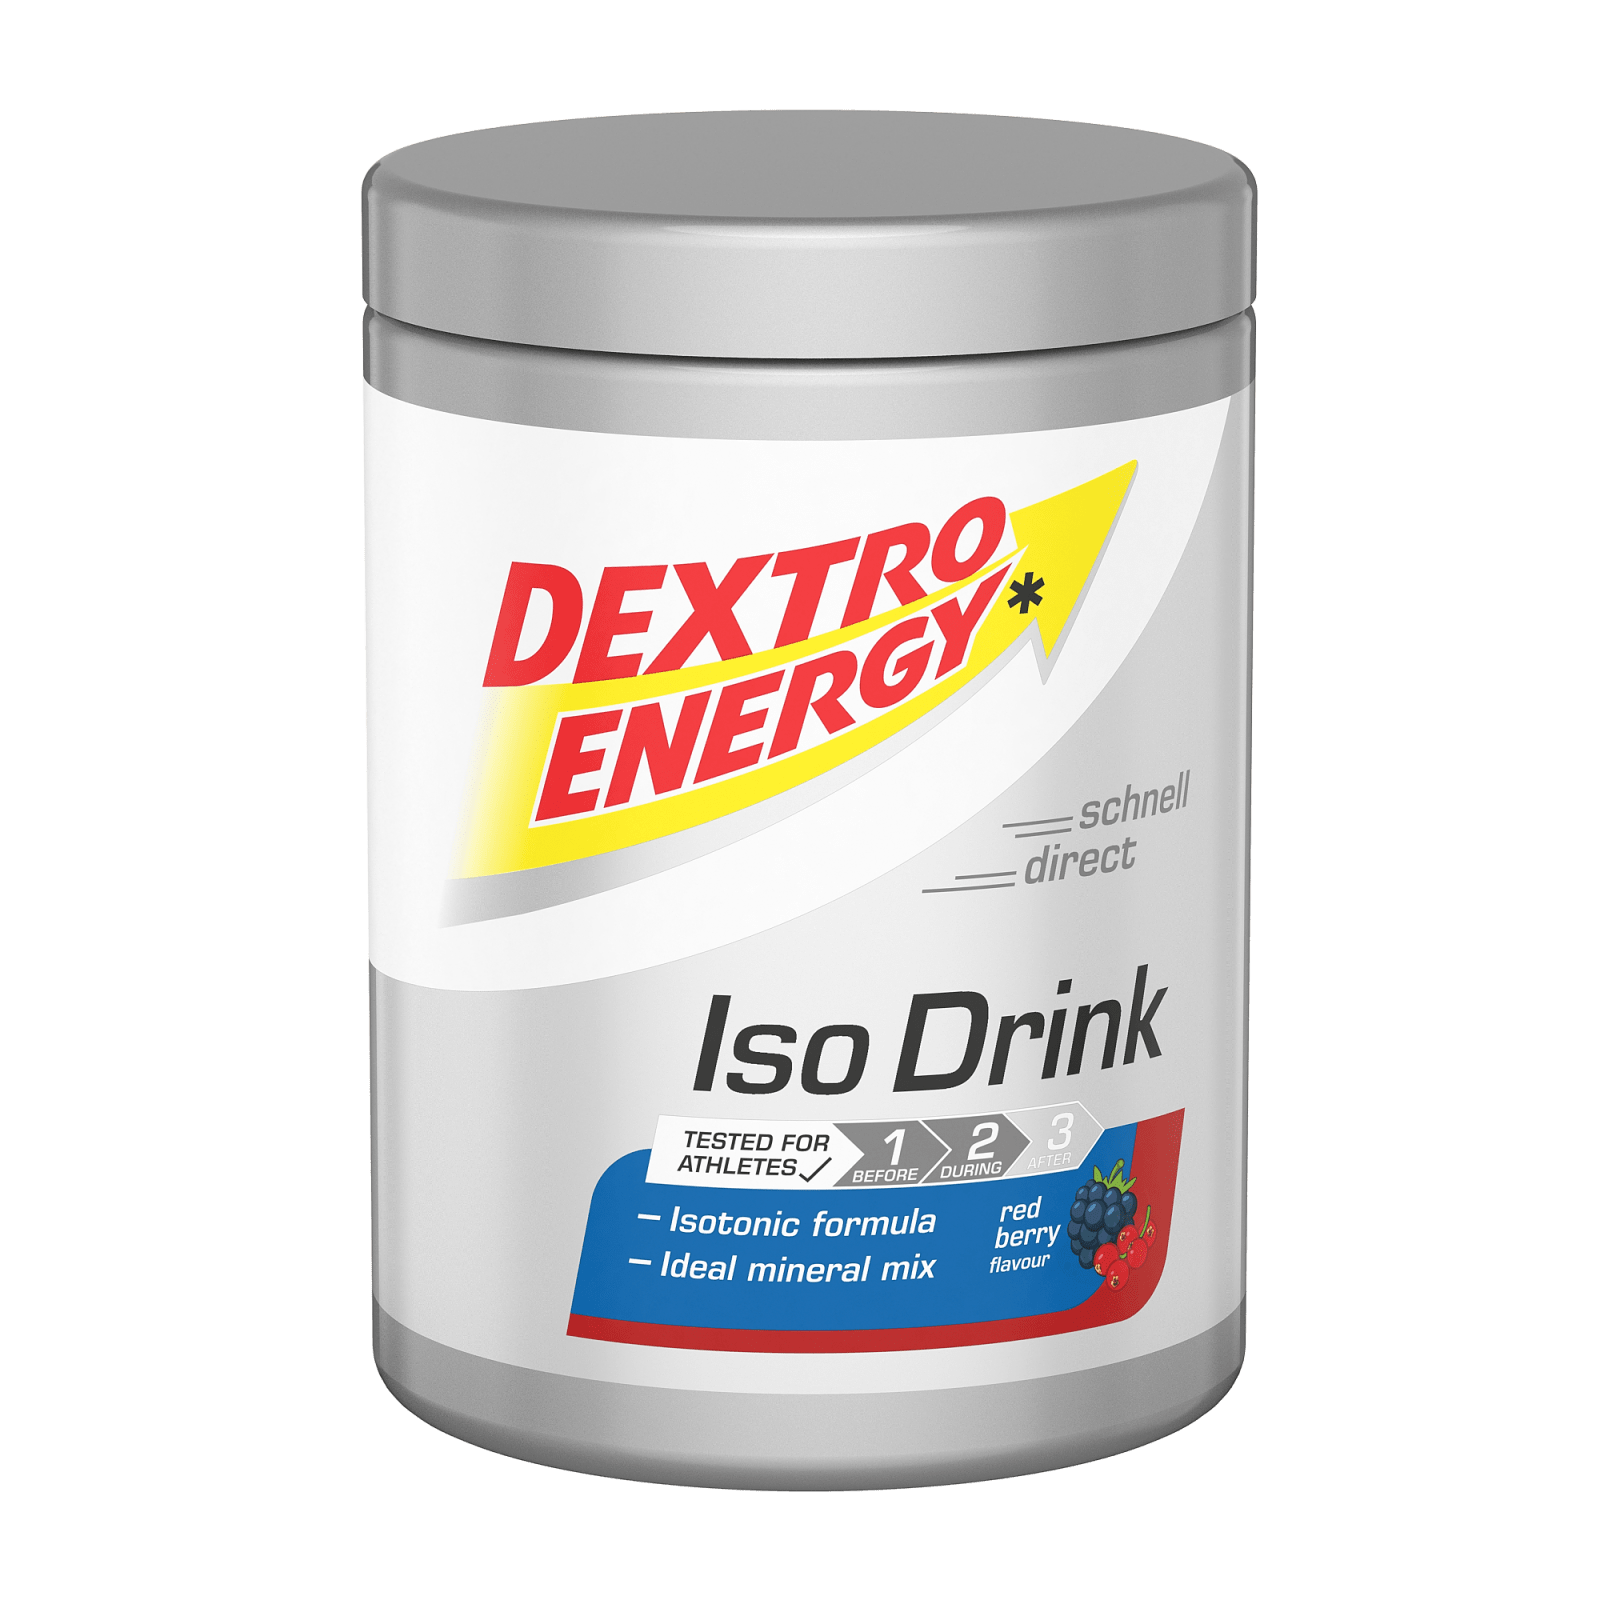 whisky litteken Hesje IsoDrink (440g) van Dextro Energy kopen | Bodylab Shop